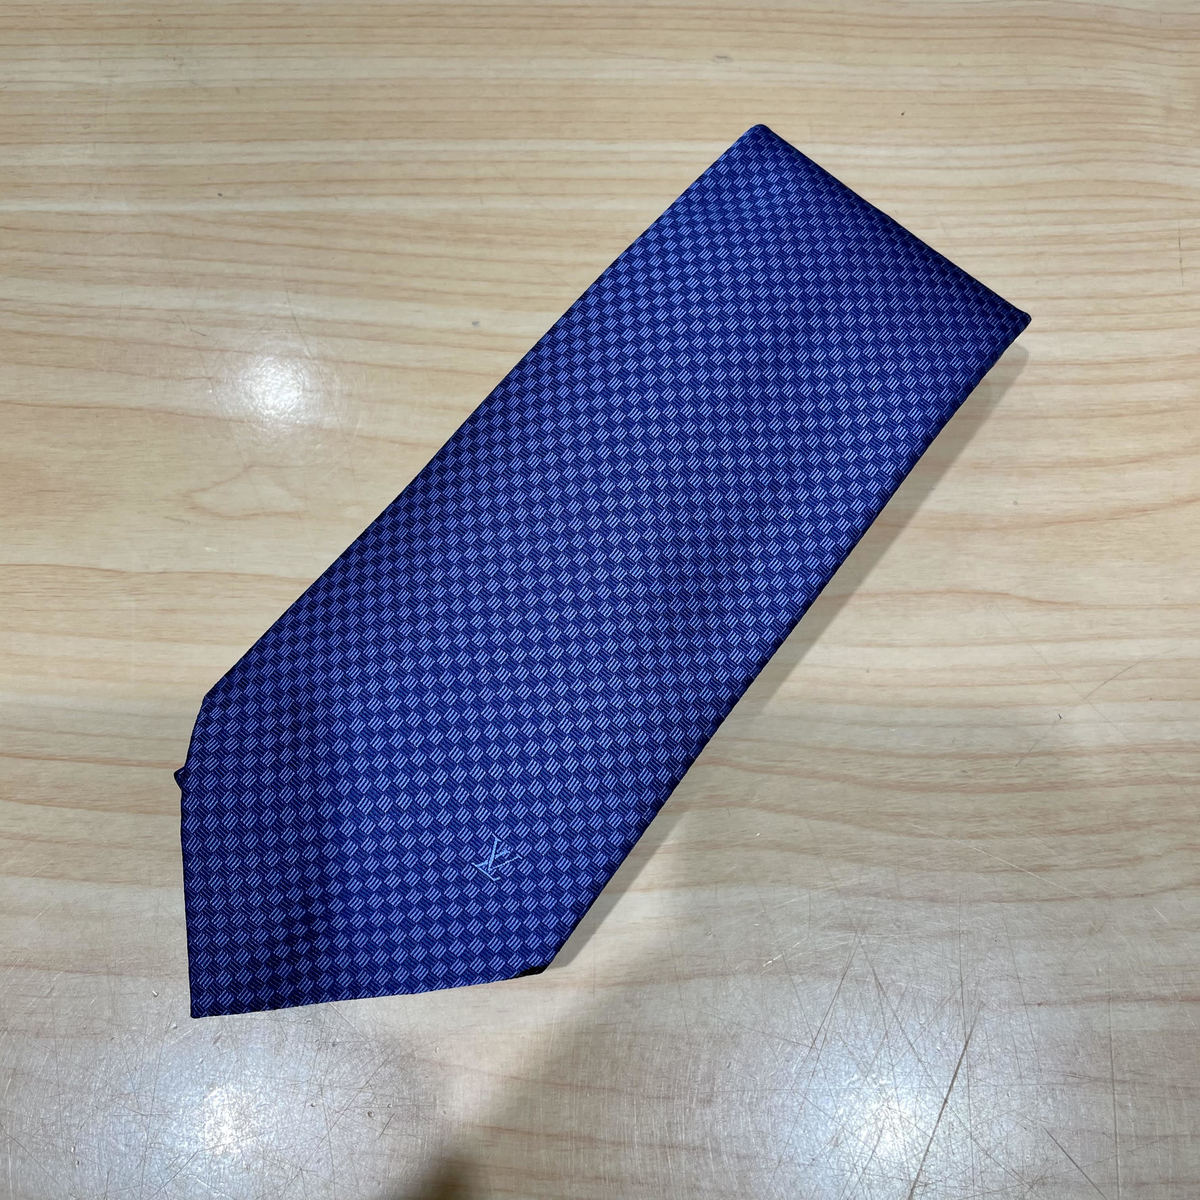 ルイヴィトンのブルー 市松模様 2018年製 シルク ネクタイの買取実績です。